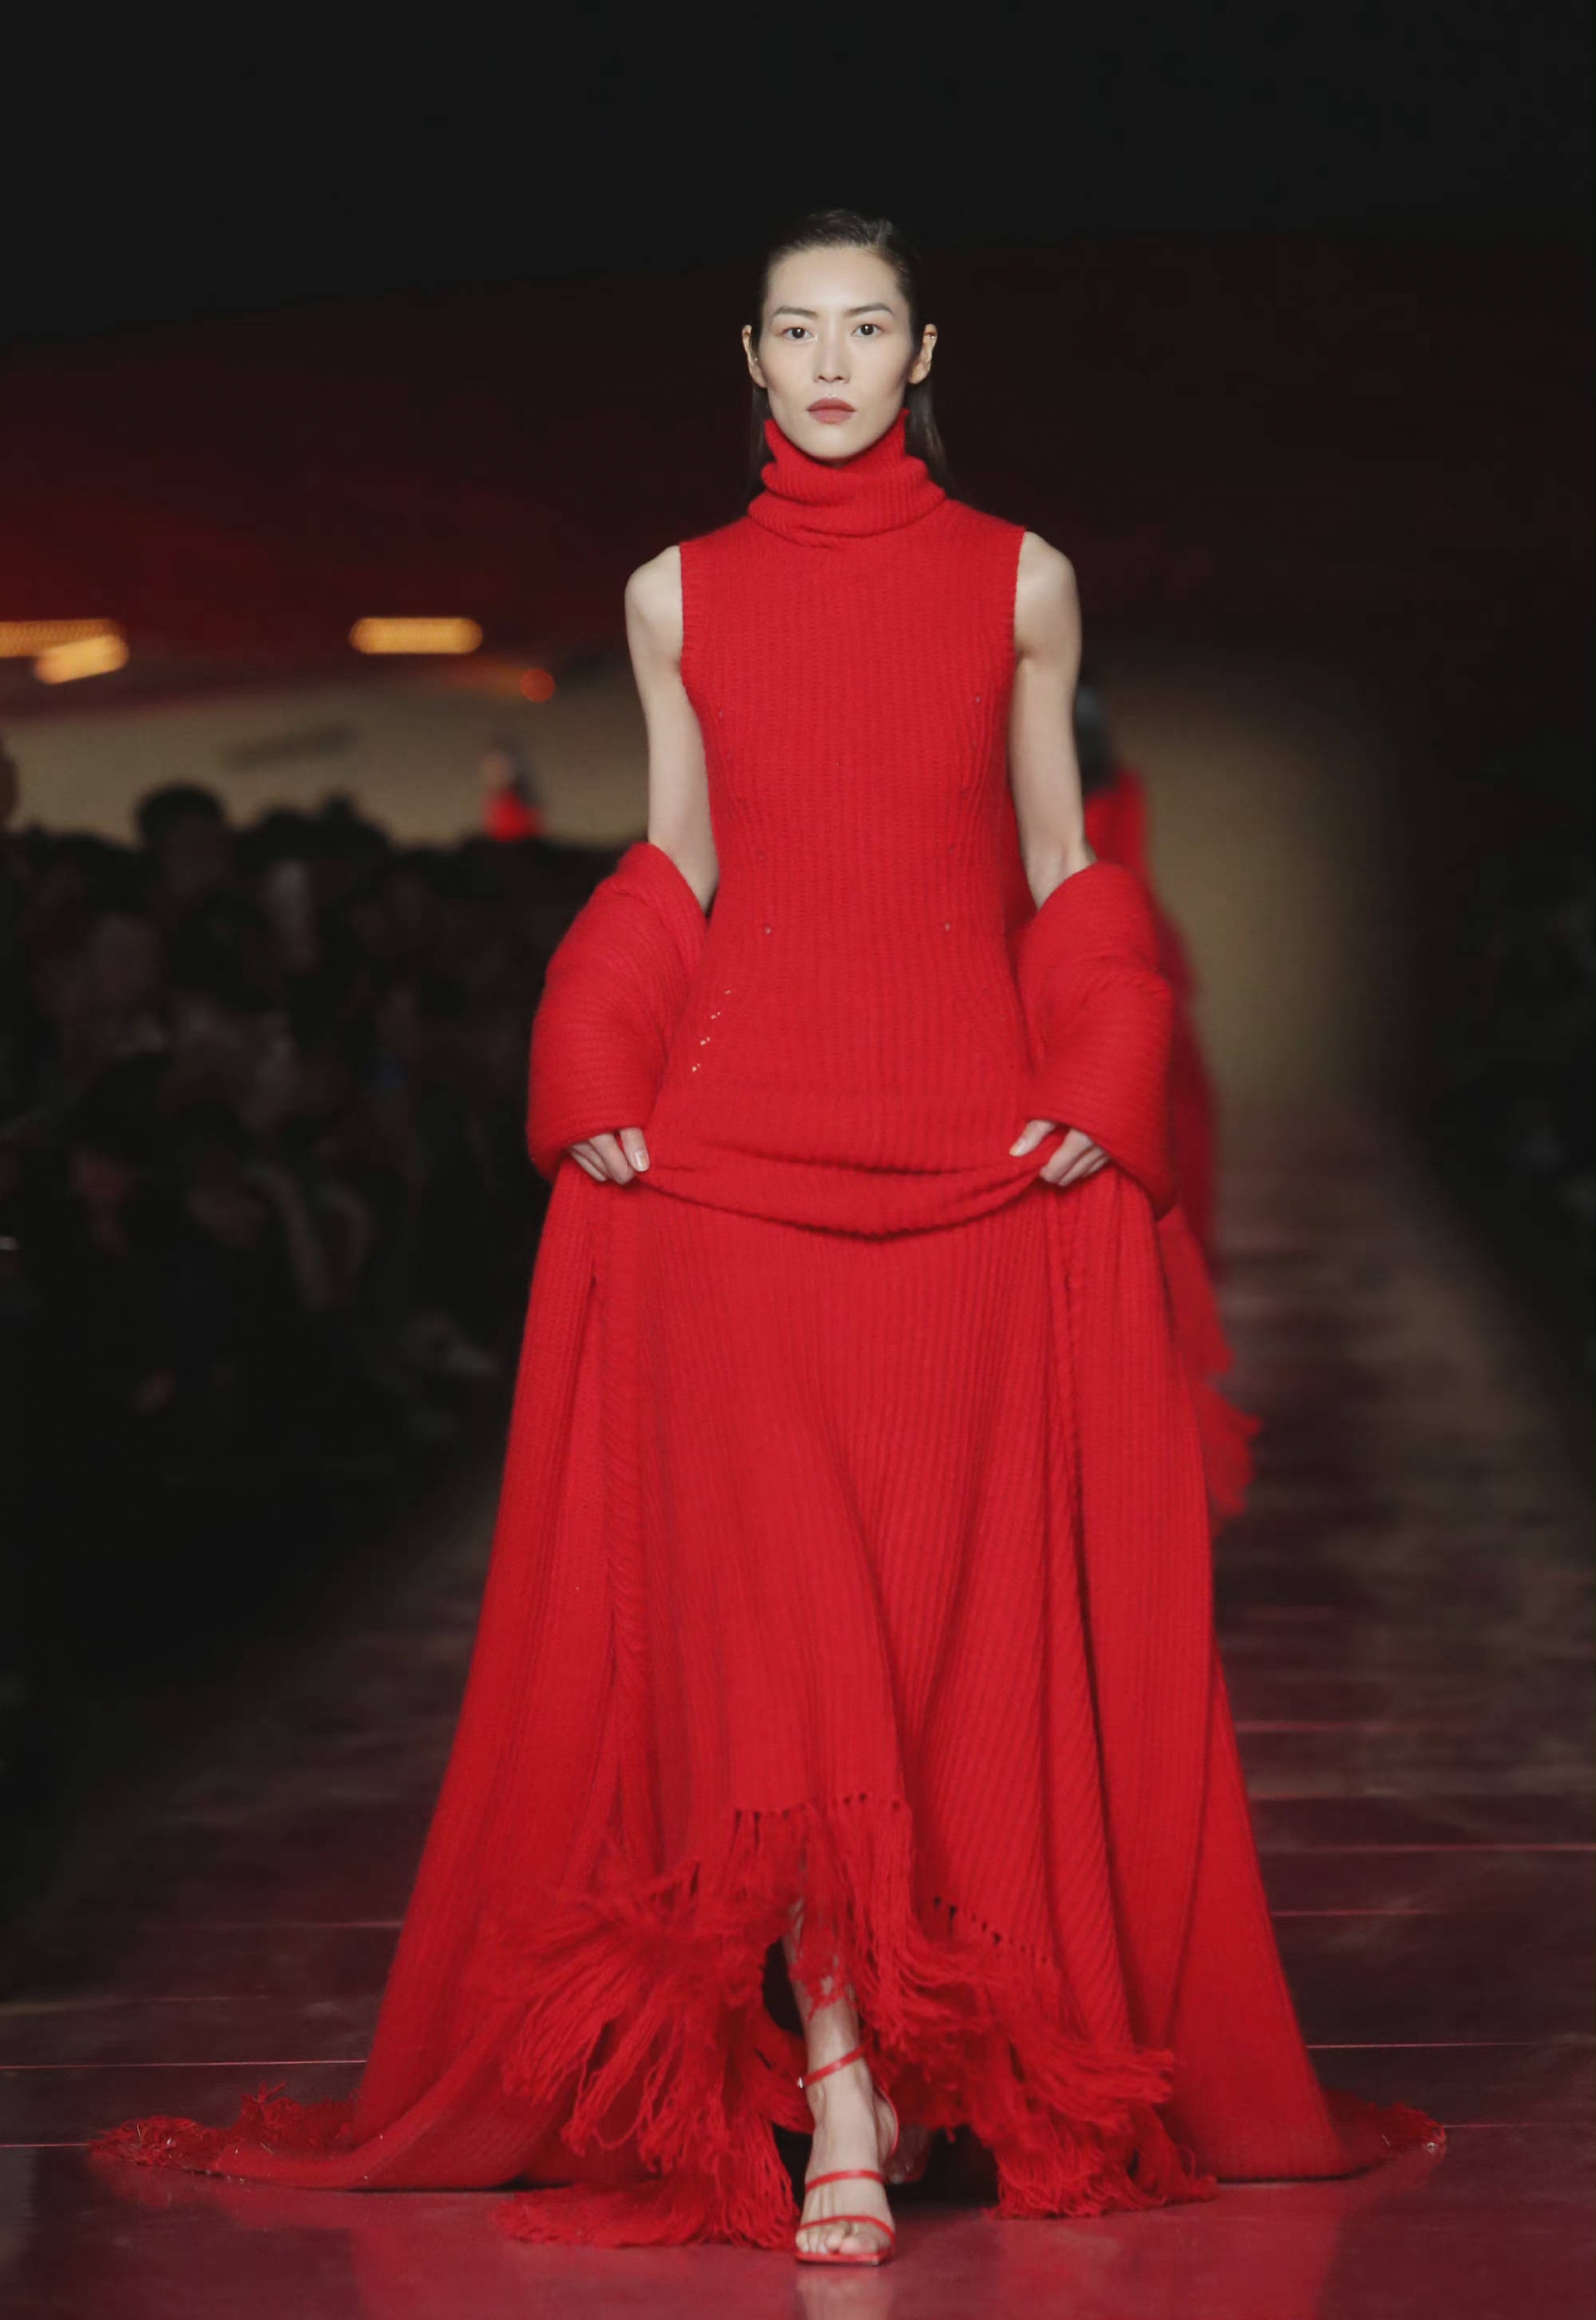 Liu Wen toát lên khí chất sang chảnh khi sải bước trên sàn catwalk. Cô nàng tạo điểm nhấn bằng bộ trang phục len cổ lọ dáng dài màu đỏ rực rỡ, mái tóc của nữ người mẫu được chải ngược ra sau càng giúp cô thêm phần 'high fashion'.